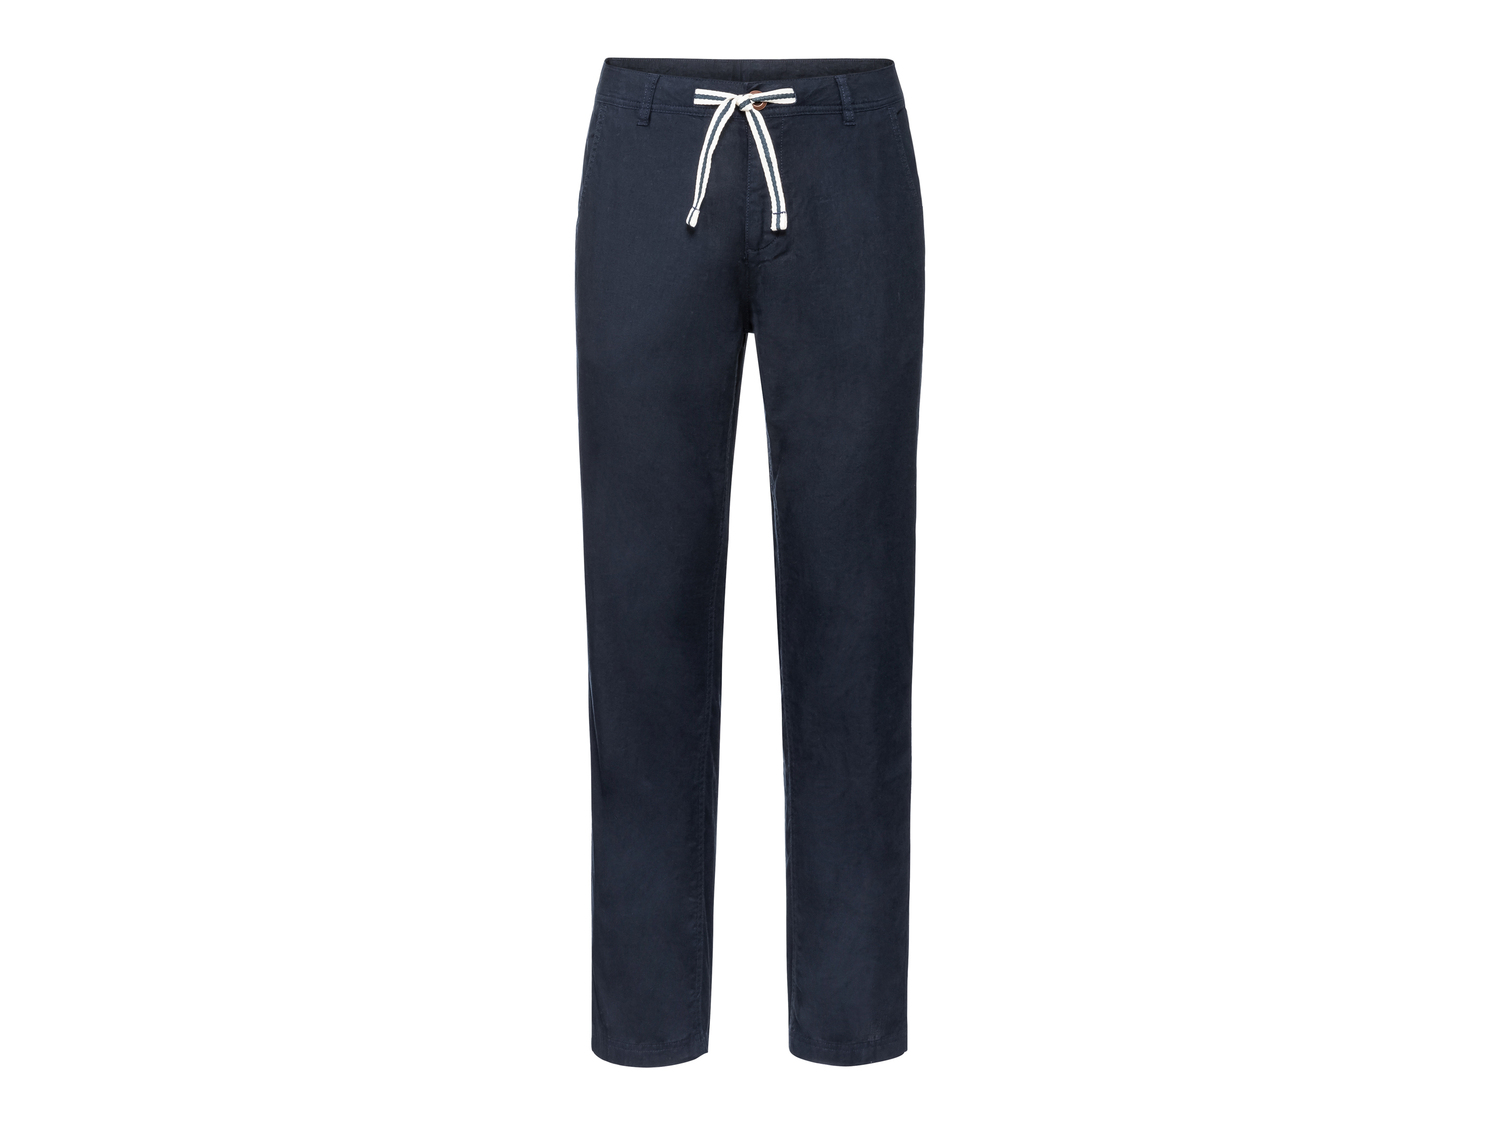 Pantaloni in lino da uomo Livergy, prezzo 9.99 &#8364; 
Misure: 48-56
Taglie ...